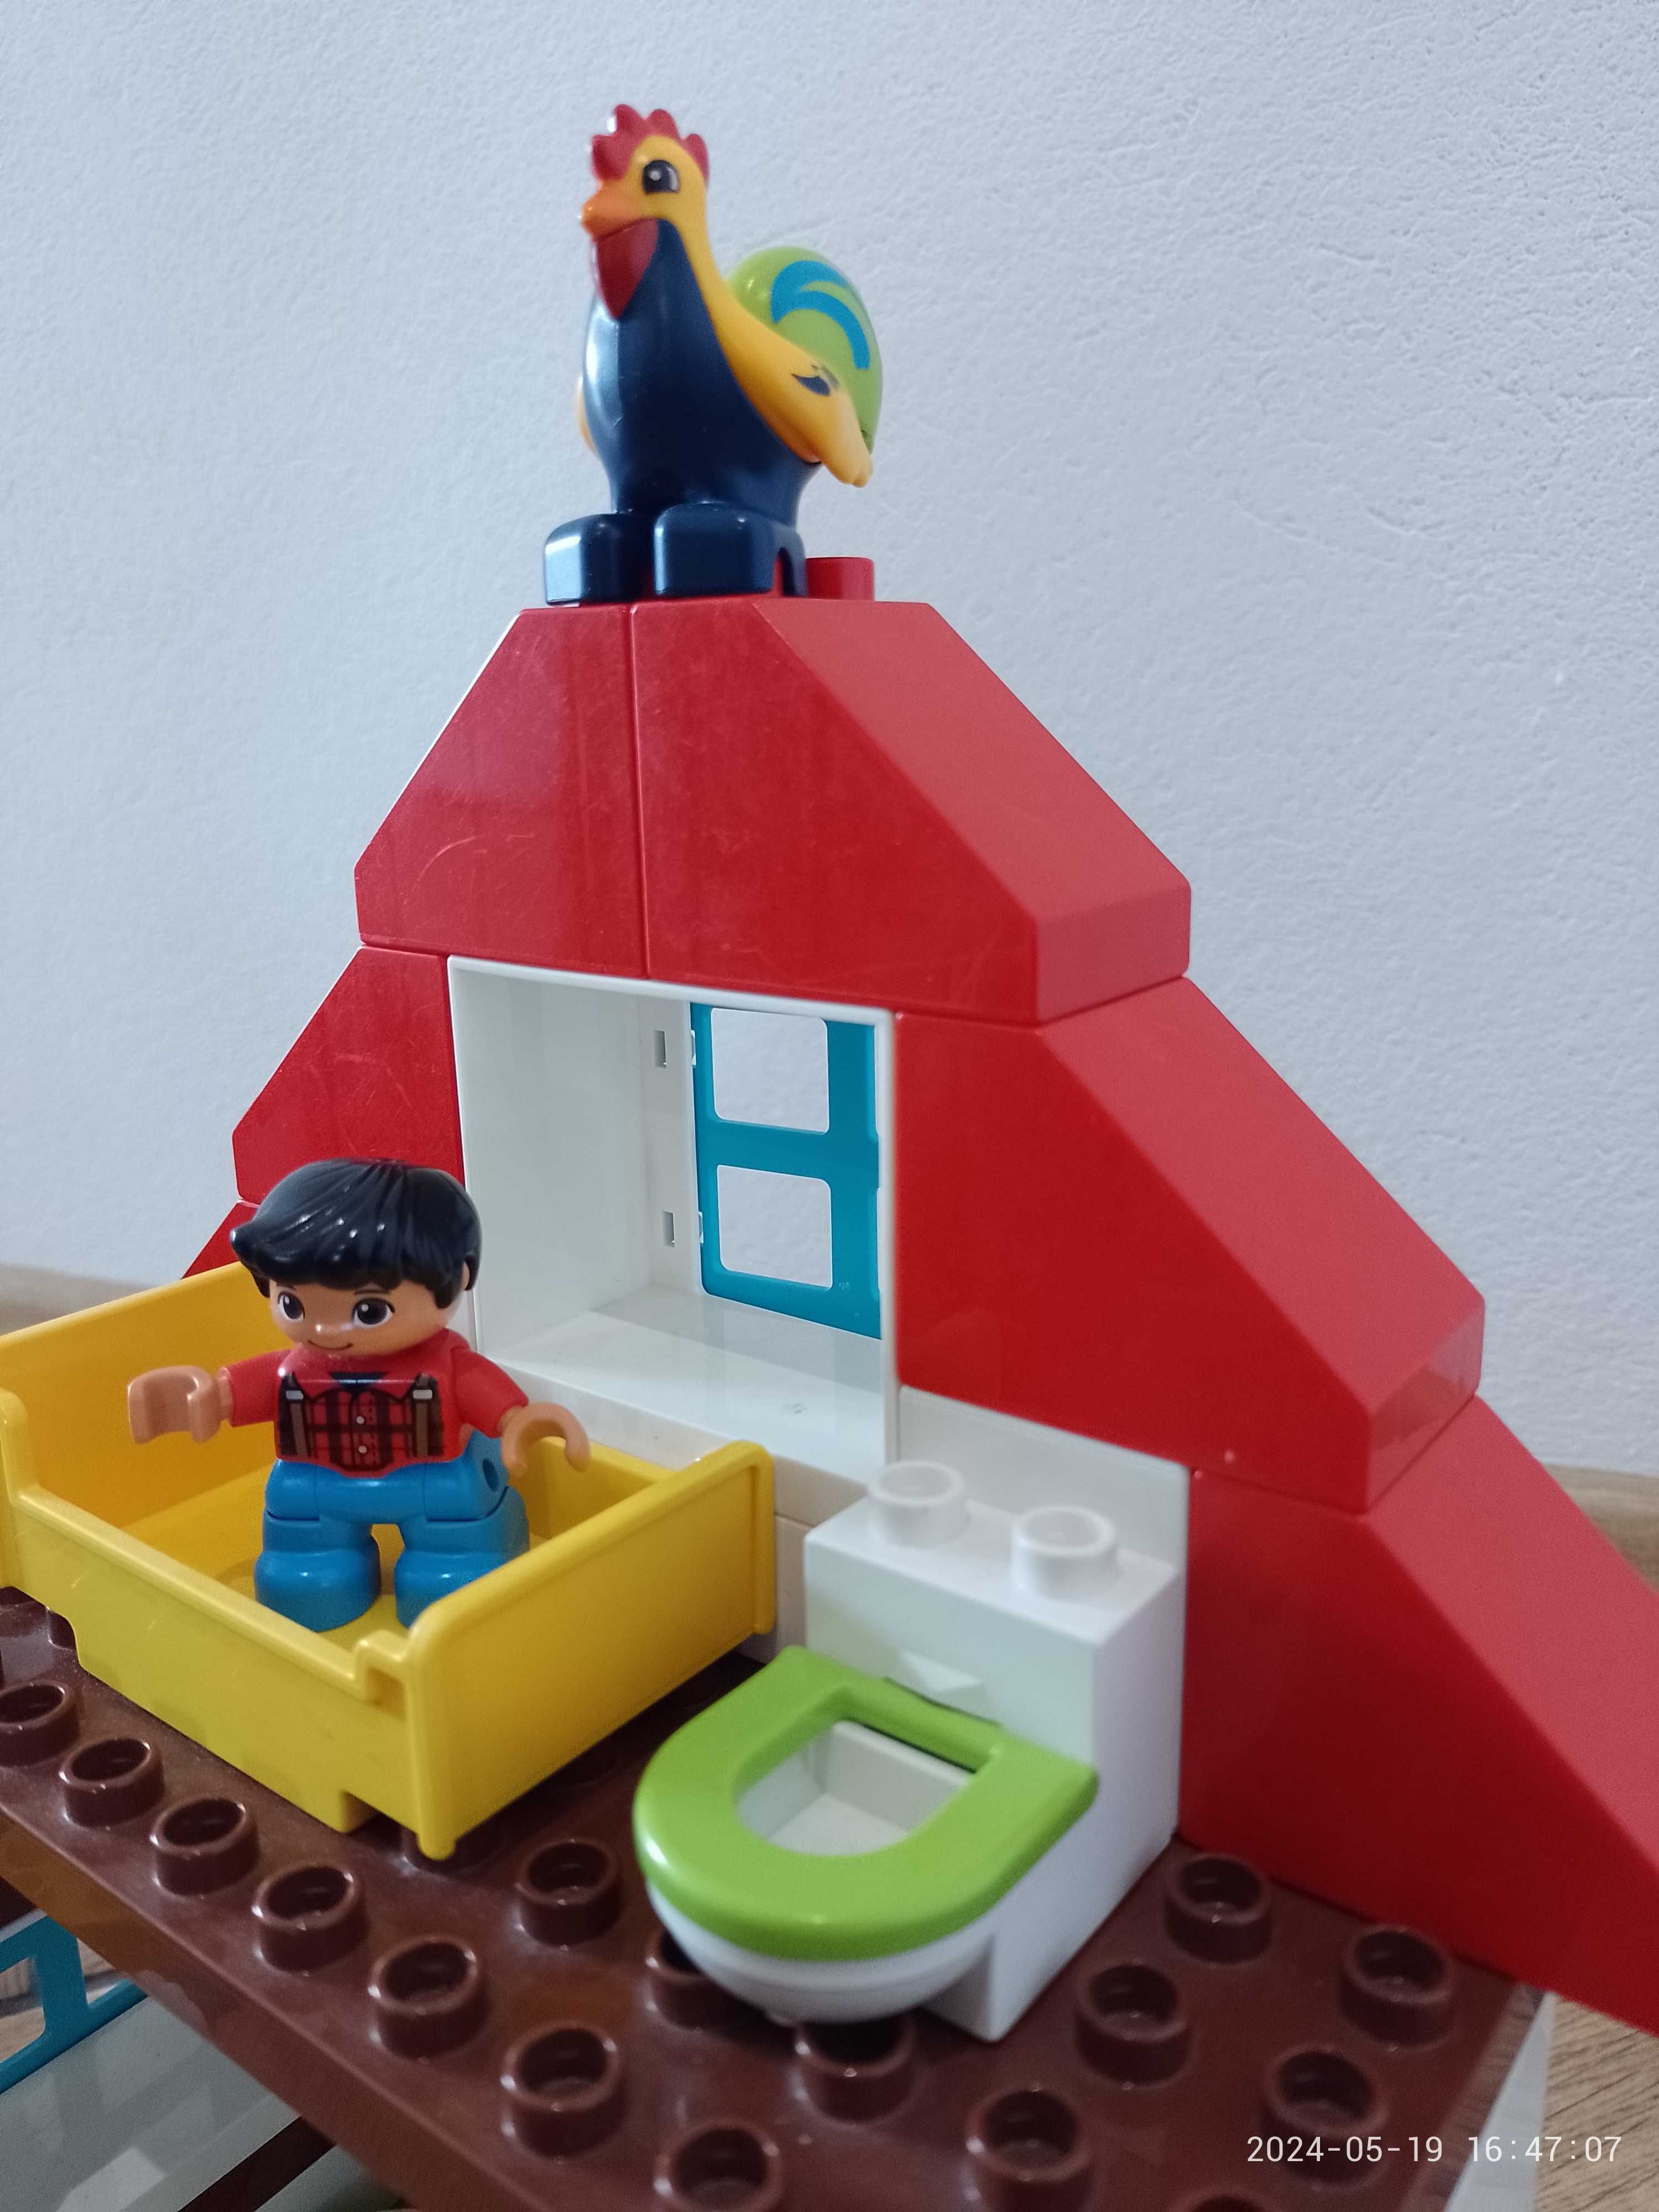 Zestaw LEGO Duplo 10869 Przygody na farmie - kompletny na 100% WARTO